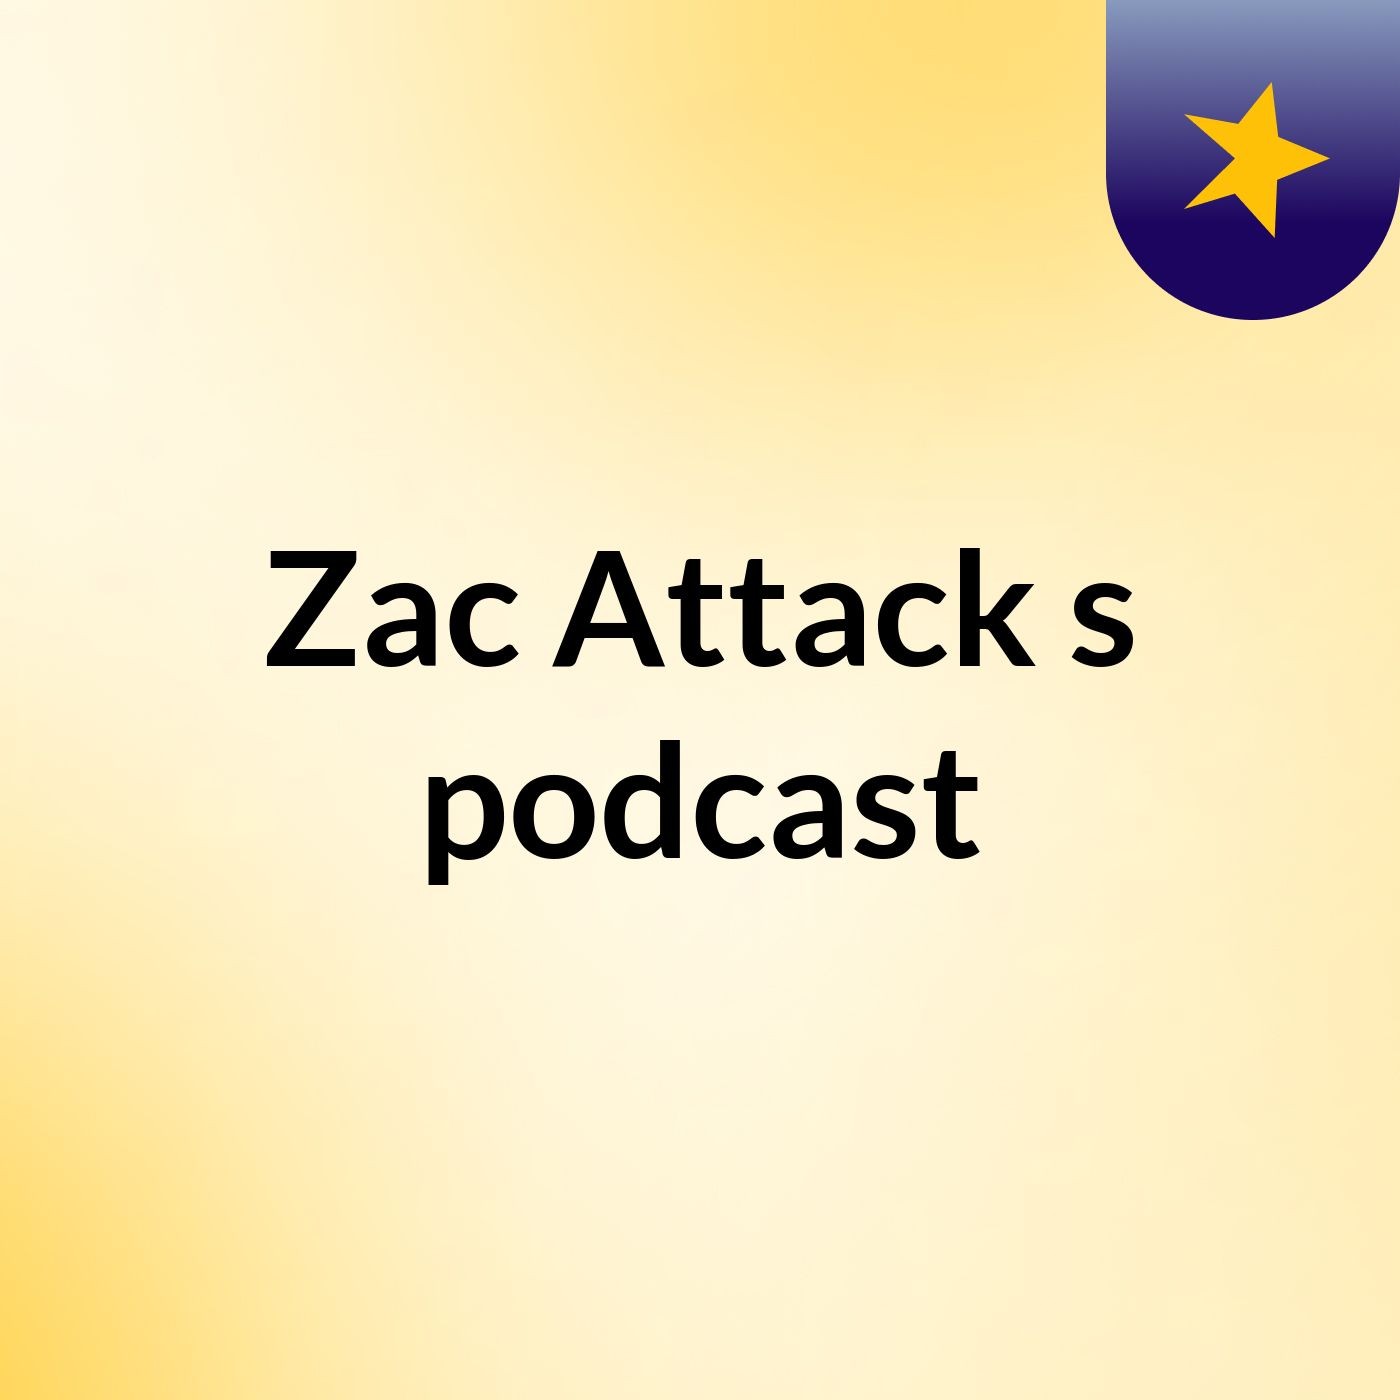 Zac Attack's podcast